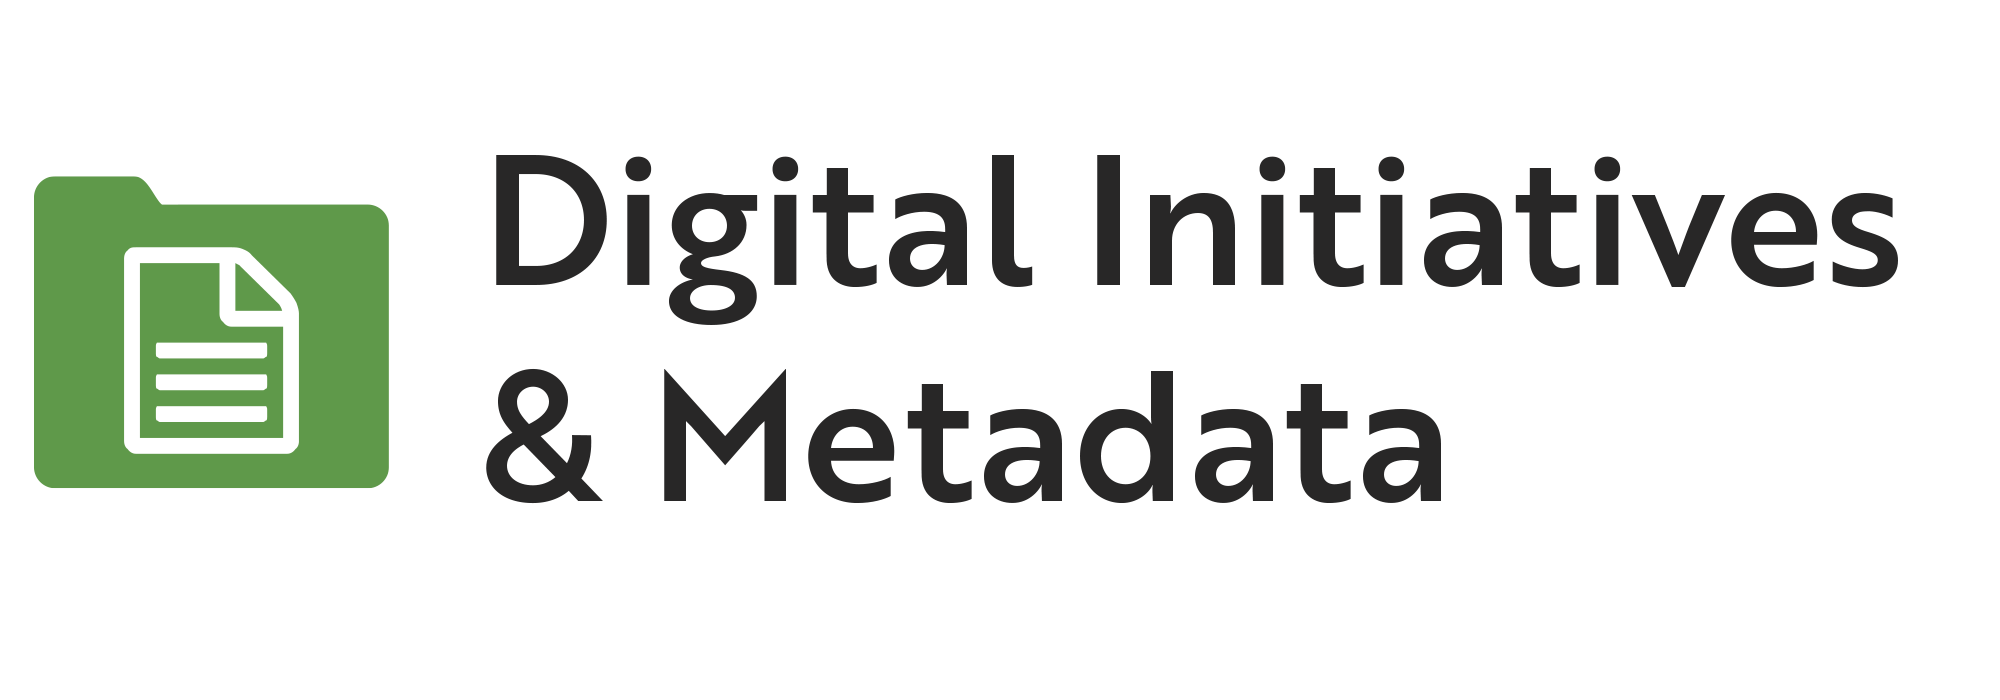 Digital Initiatives & Metadata.